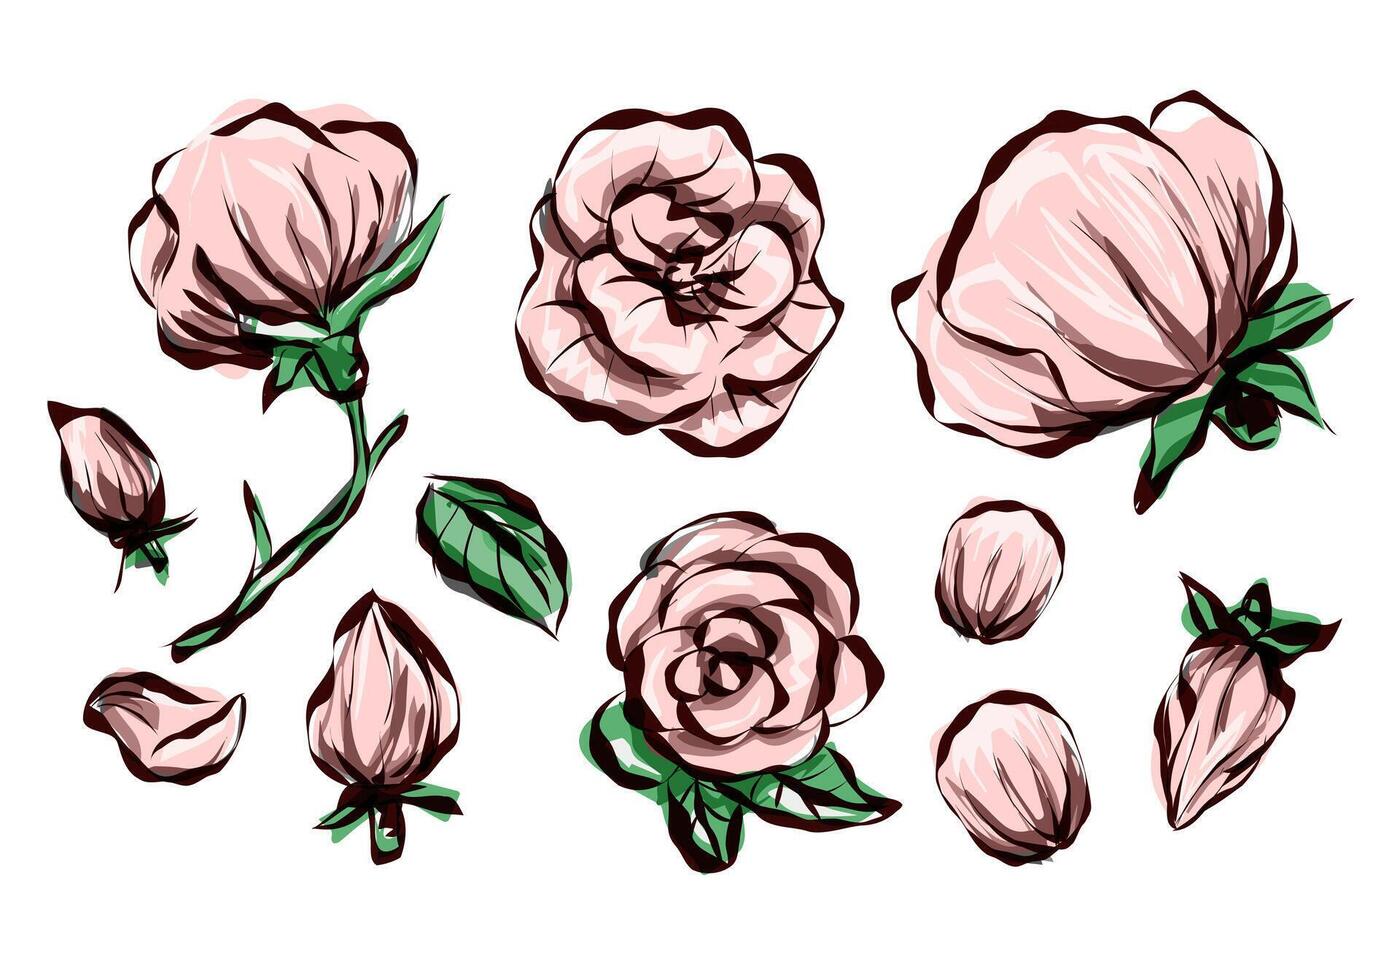 Clásico Rosa flores en blanco antecedentes. floral colección de dibujos animados vector detallado mano dibujado rosas. vector ilustración.